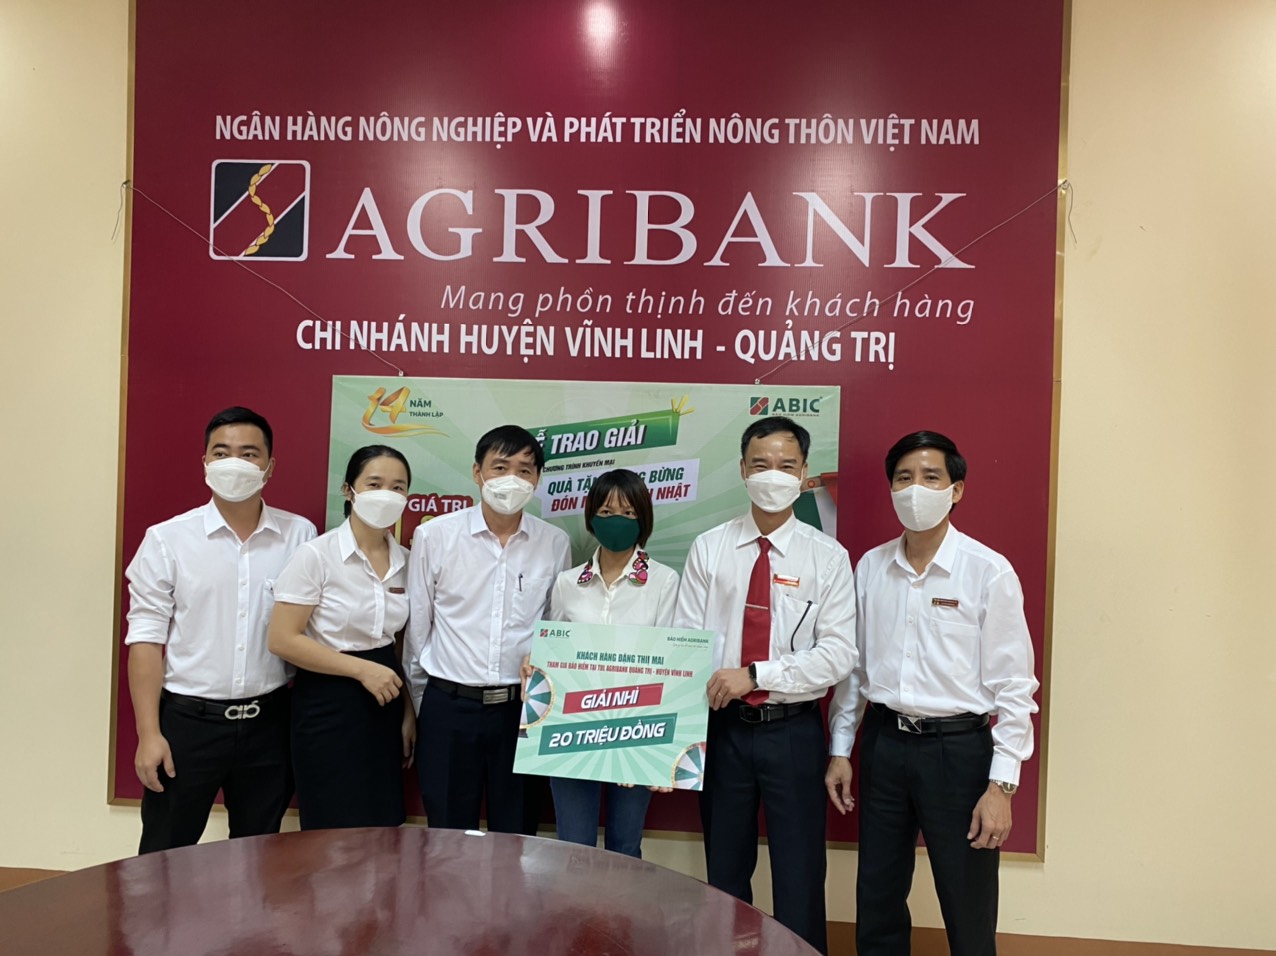 Bảo hiểm Agribank trao giải cho khách hàng may mắn trúng thưởng Chương trình “Quà tặng tưng bừng – Đón mừng sinh nhật” - Ảnh 3.